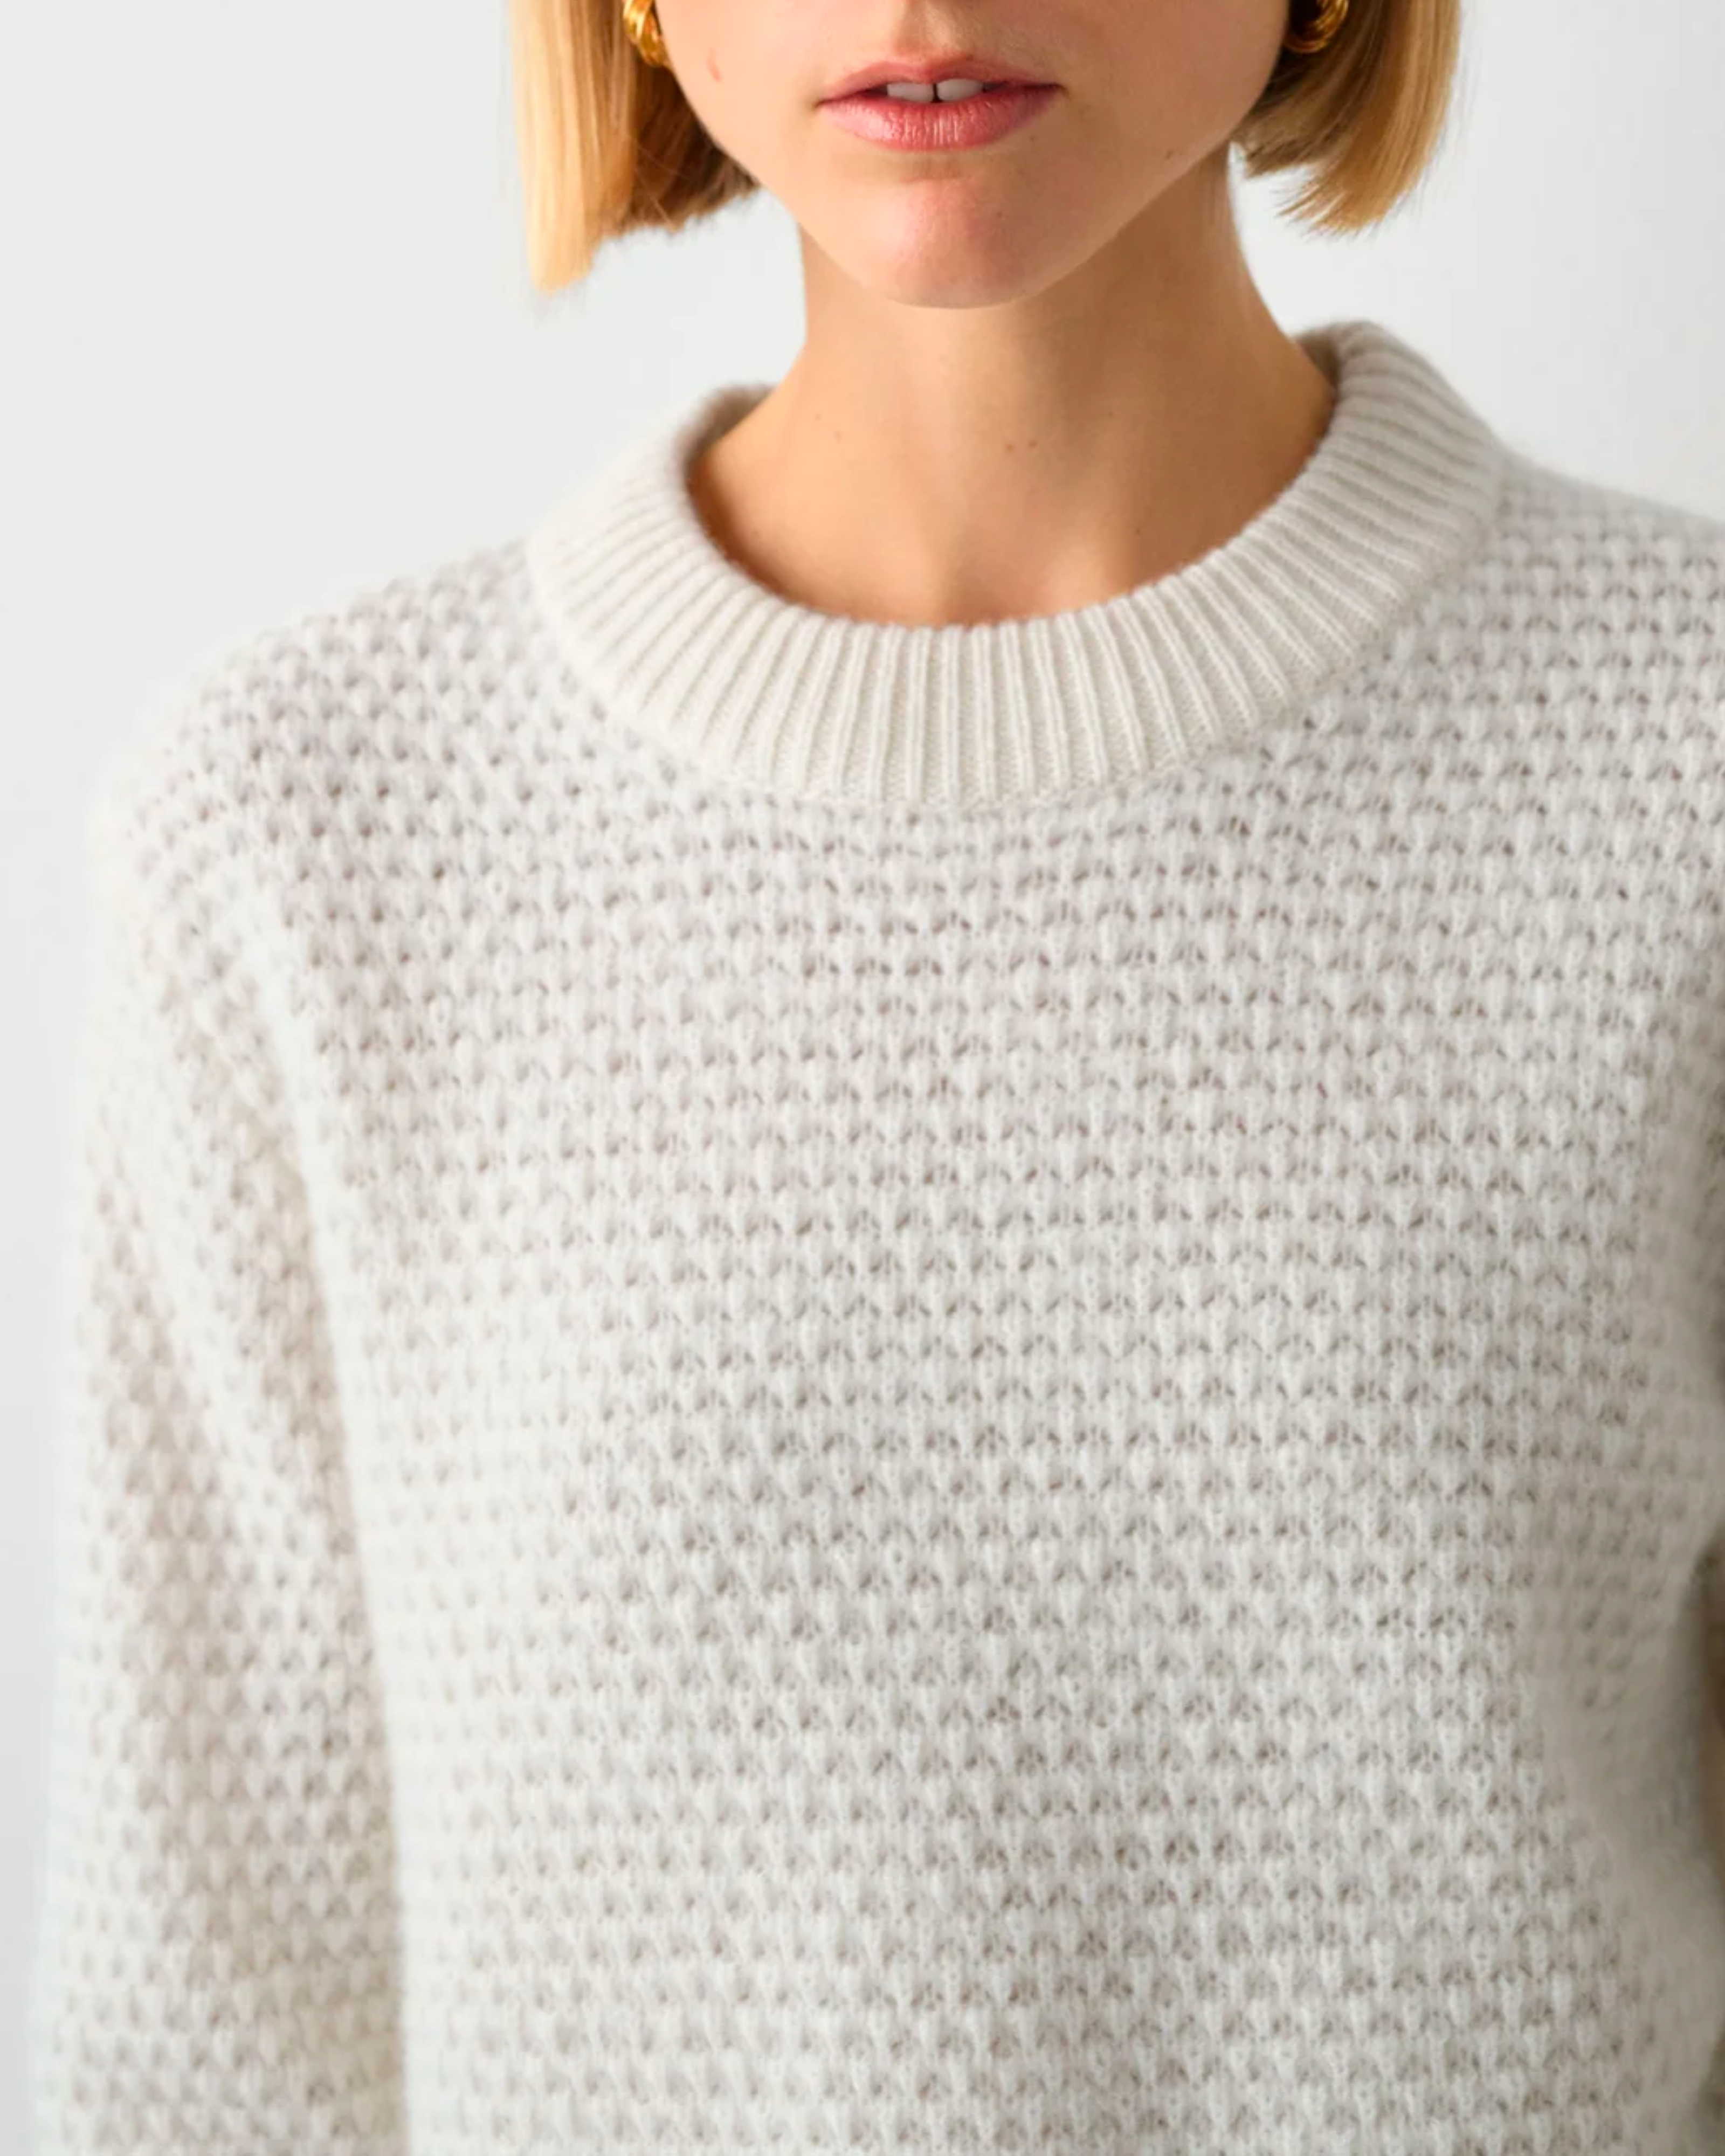 White + Warren Cashmere Textured Crewneck Sweater in Soft White